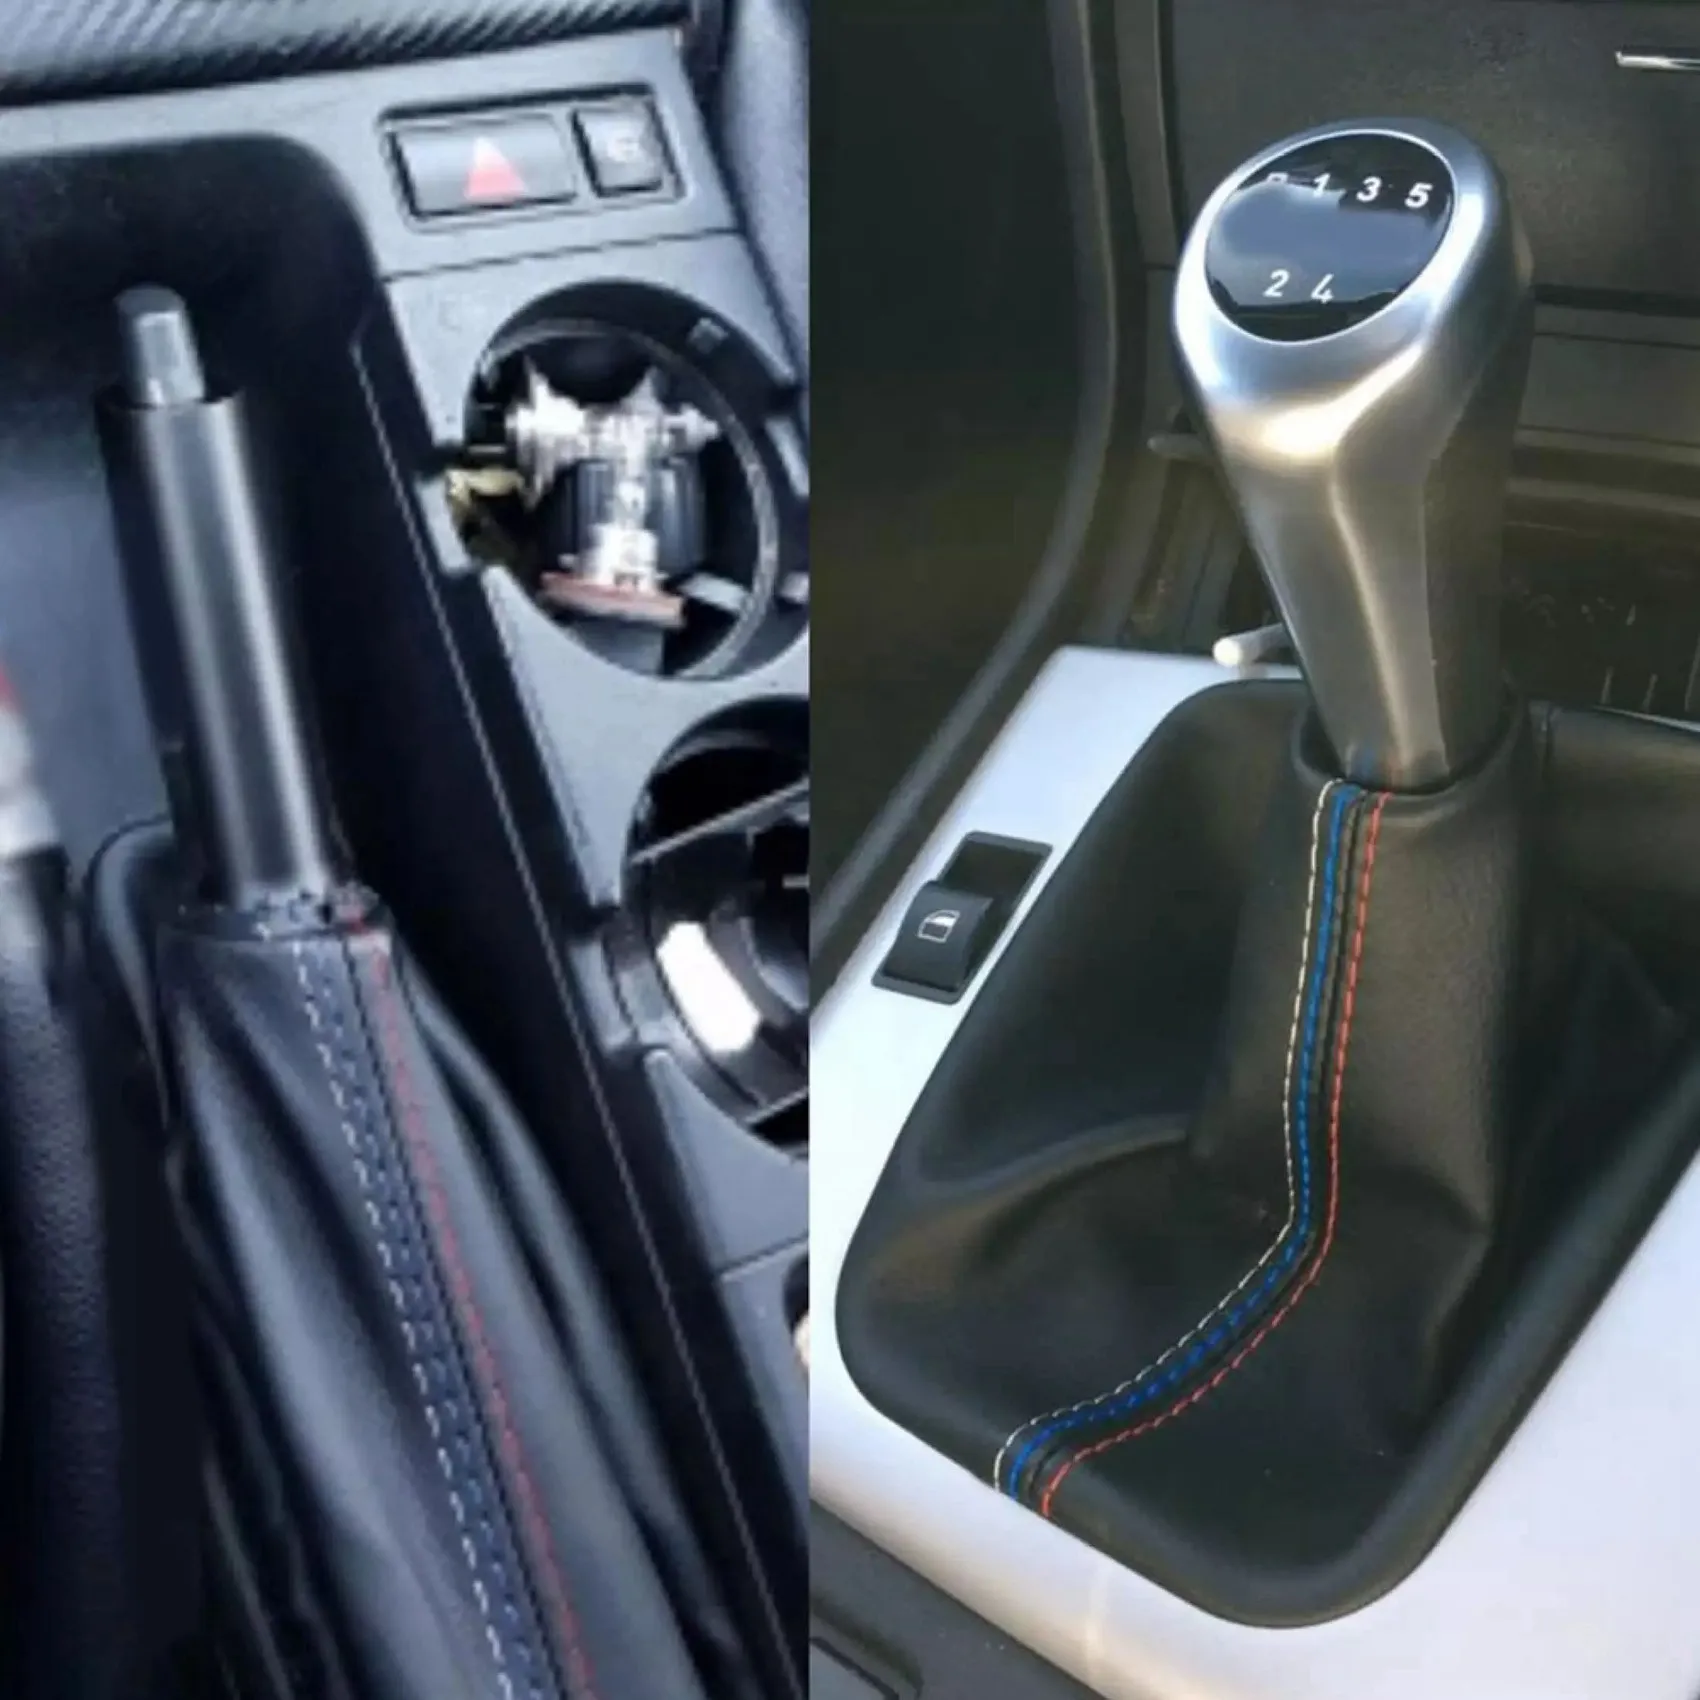 Auto Schalt manschetten manuelle Hand brems manschette Kofferraum abdeckung  für BMW- 3 Serie E36 E46 E30 E34 M3 Z3 schwarzes Wildleder